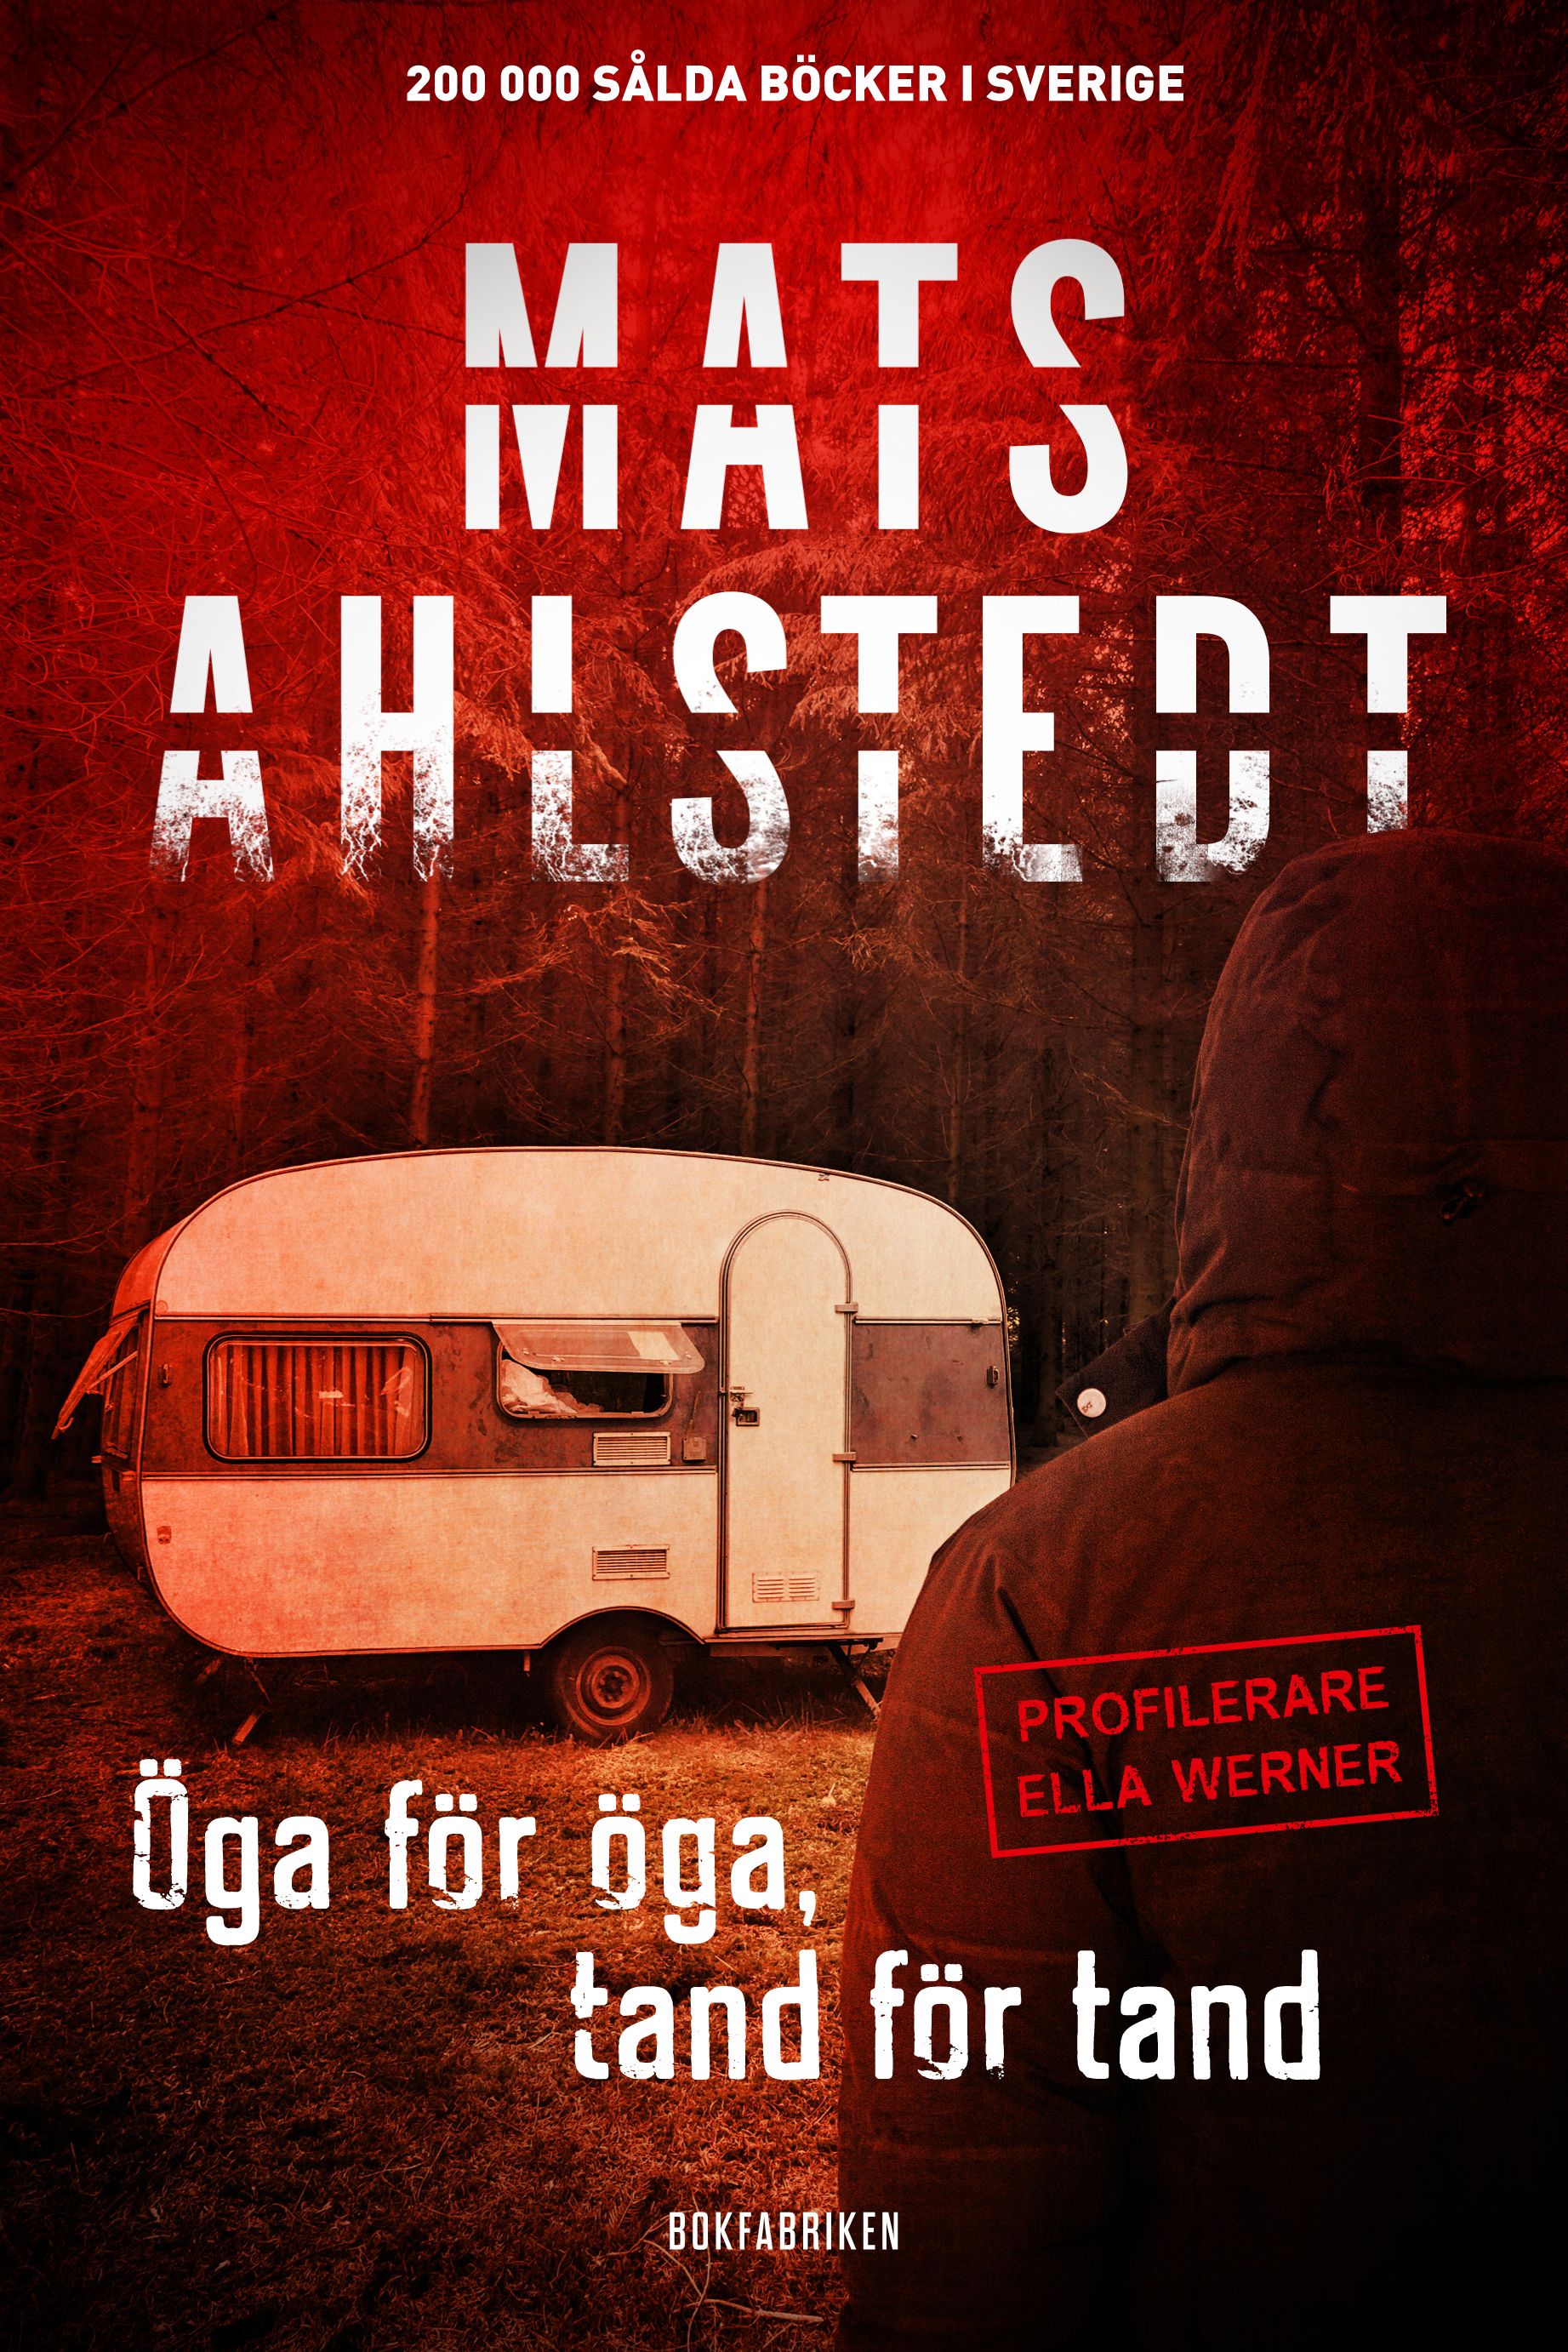 Öga för öga, tand för tand, e-bok av Mats Ahlstedt